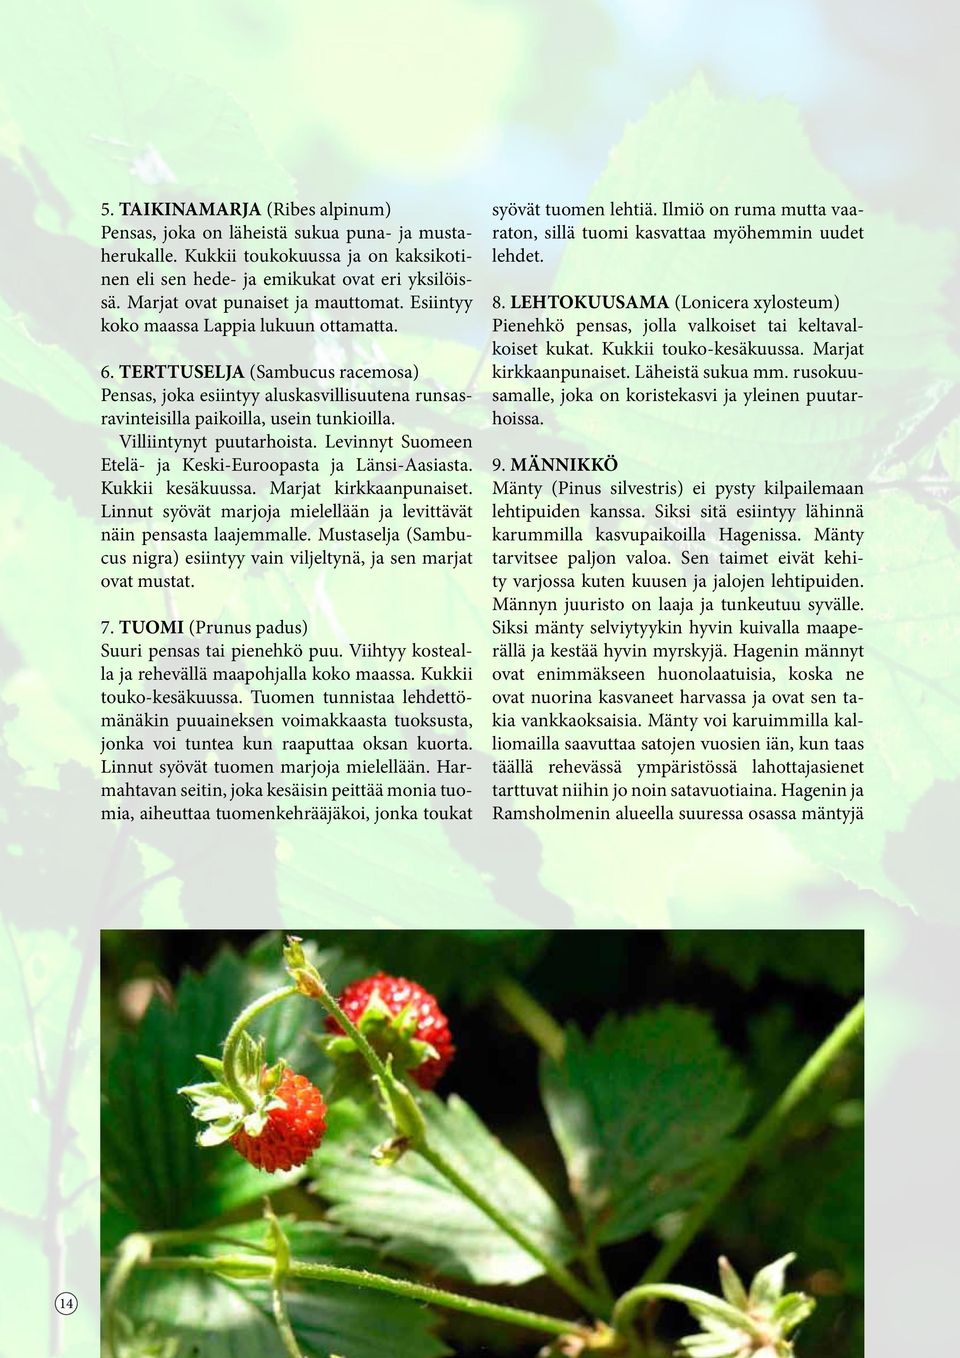 TERTTUSELJA (Sambucus racemosa) Pensas, joka esiintyy aluskasvillisuutena runsasravinteisilla paikoilla, usein tunkioilla. Villiintynyt puutarhoista.